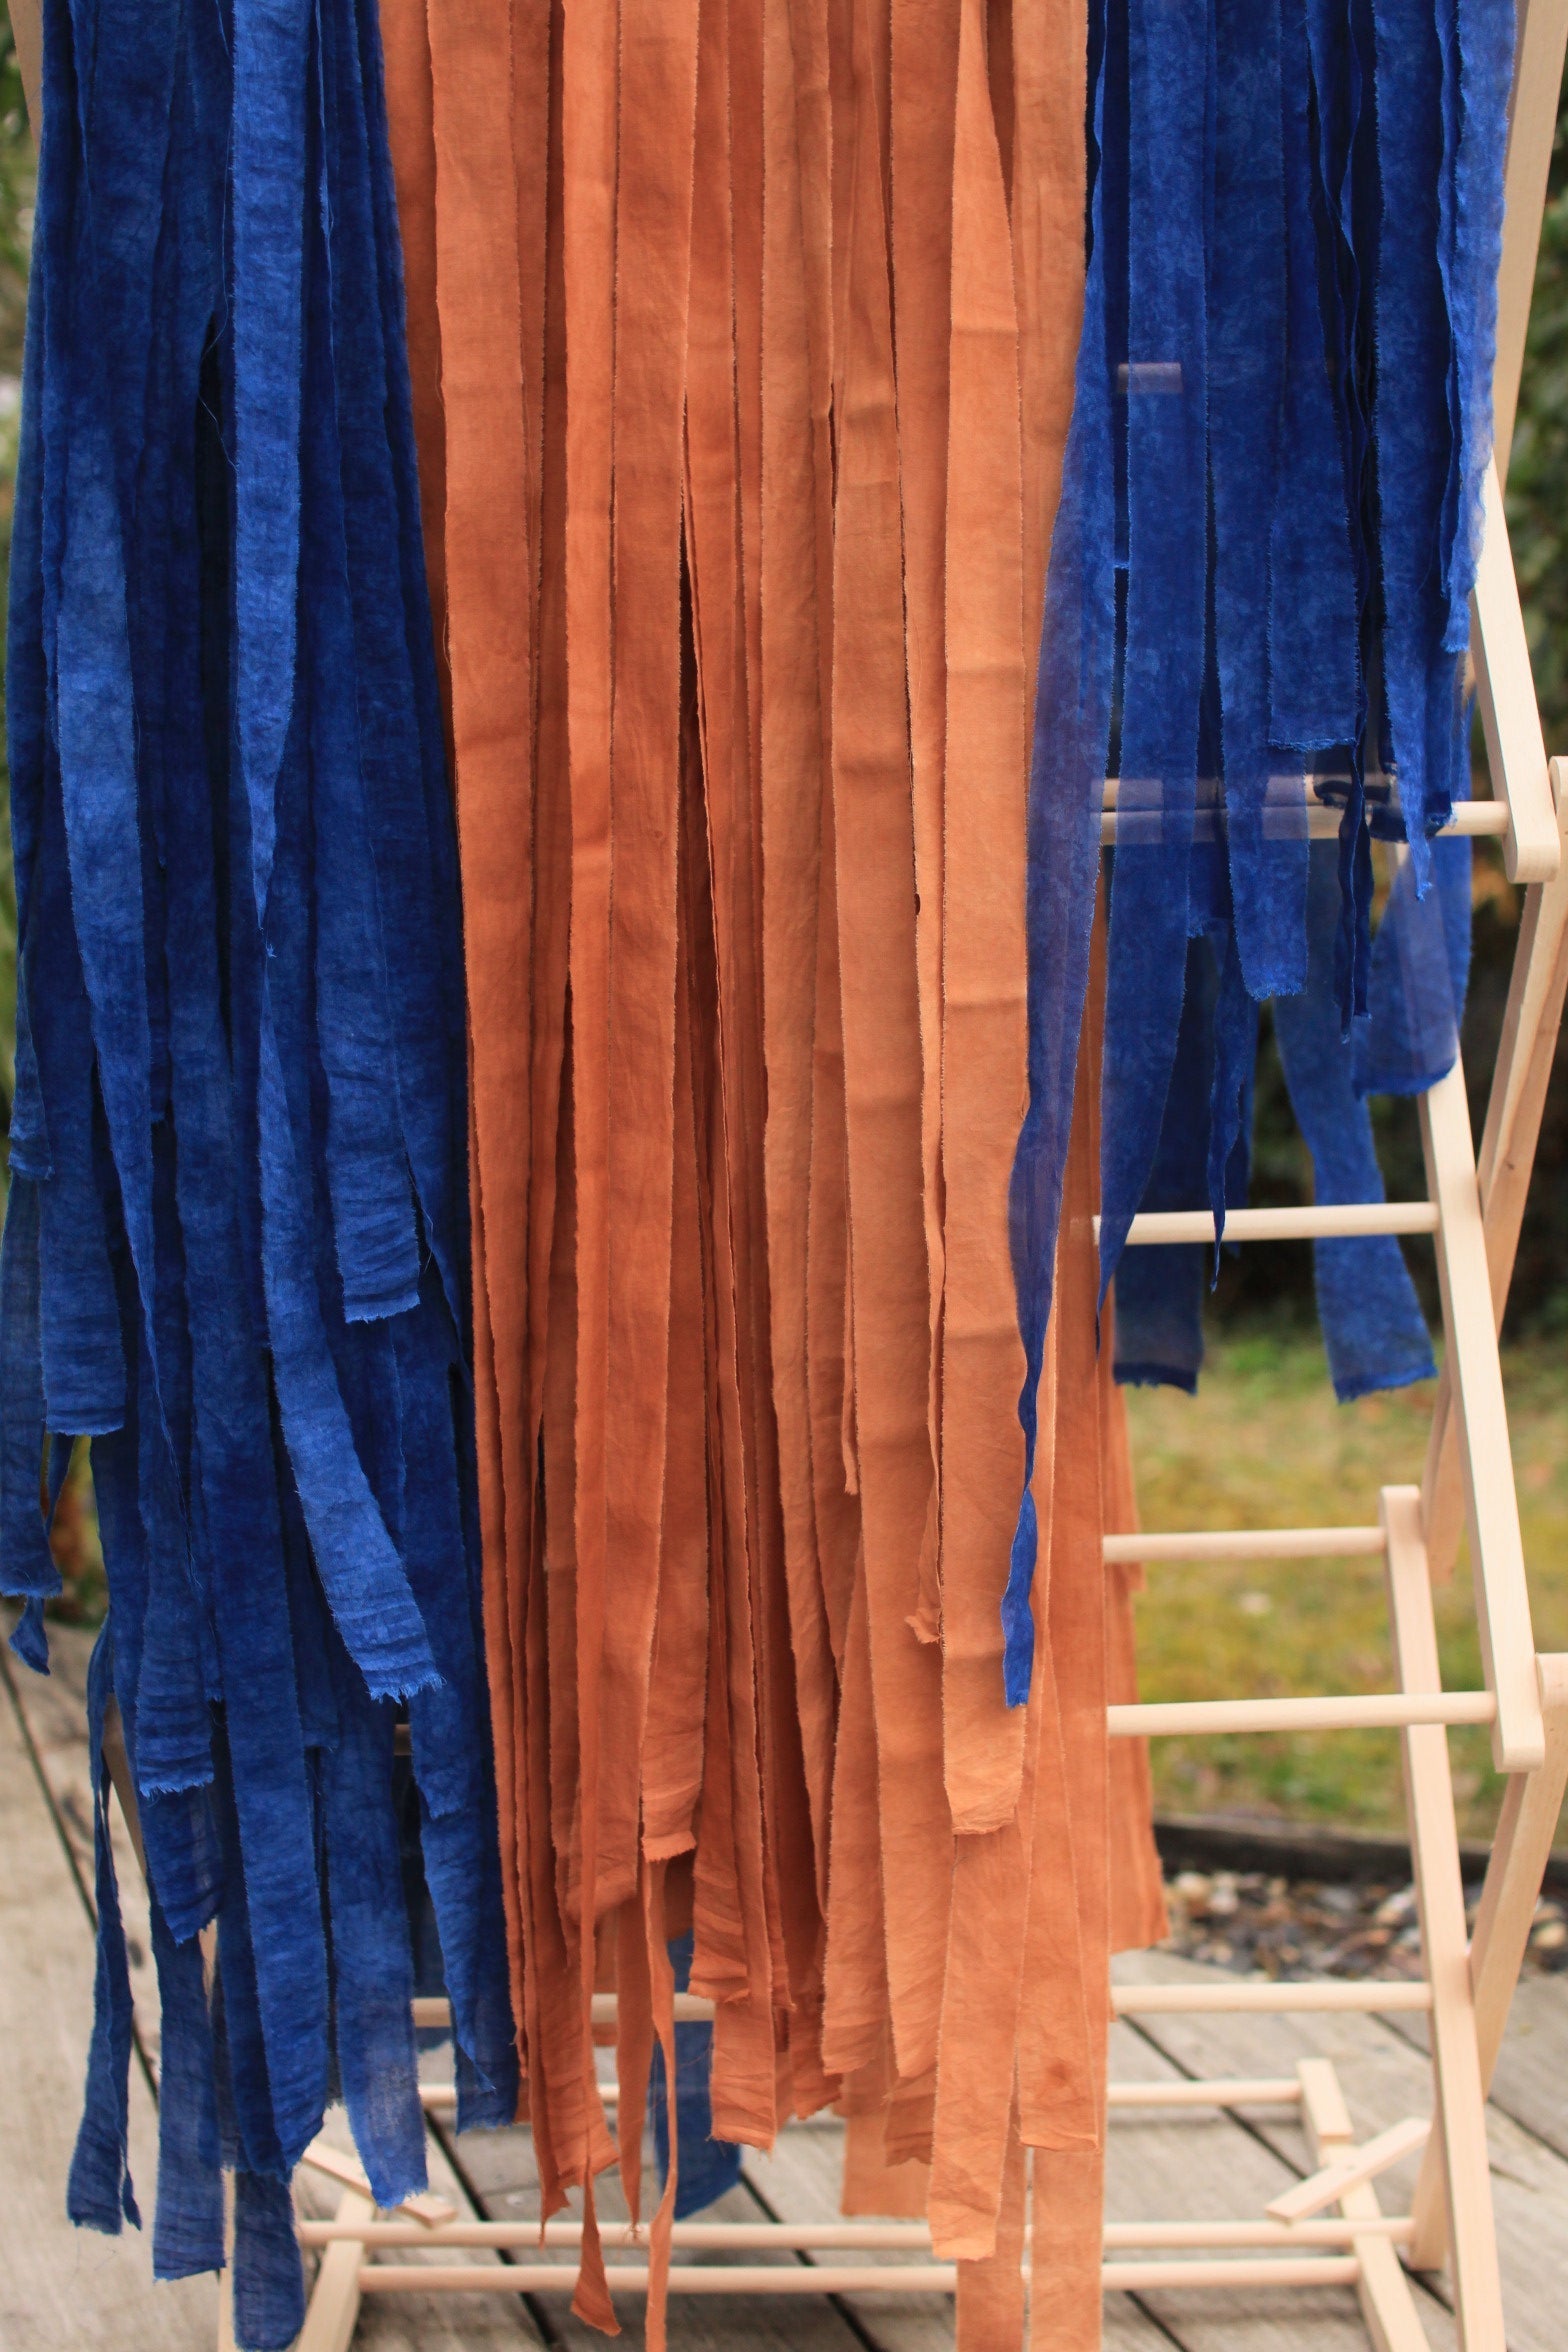 Ruban en popeline de coton - couleur "Nude/terra cotta" - largeur 3cm, longueur 2,5m